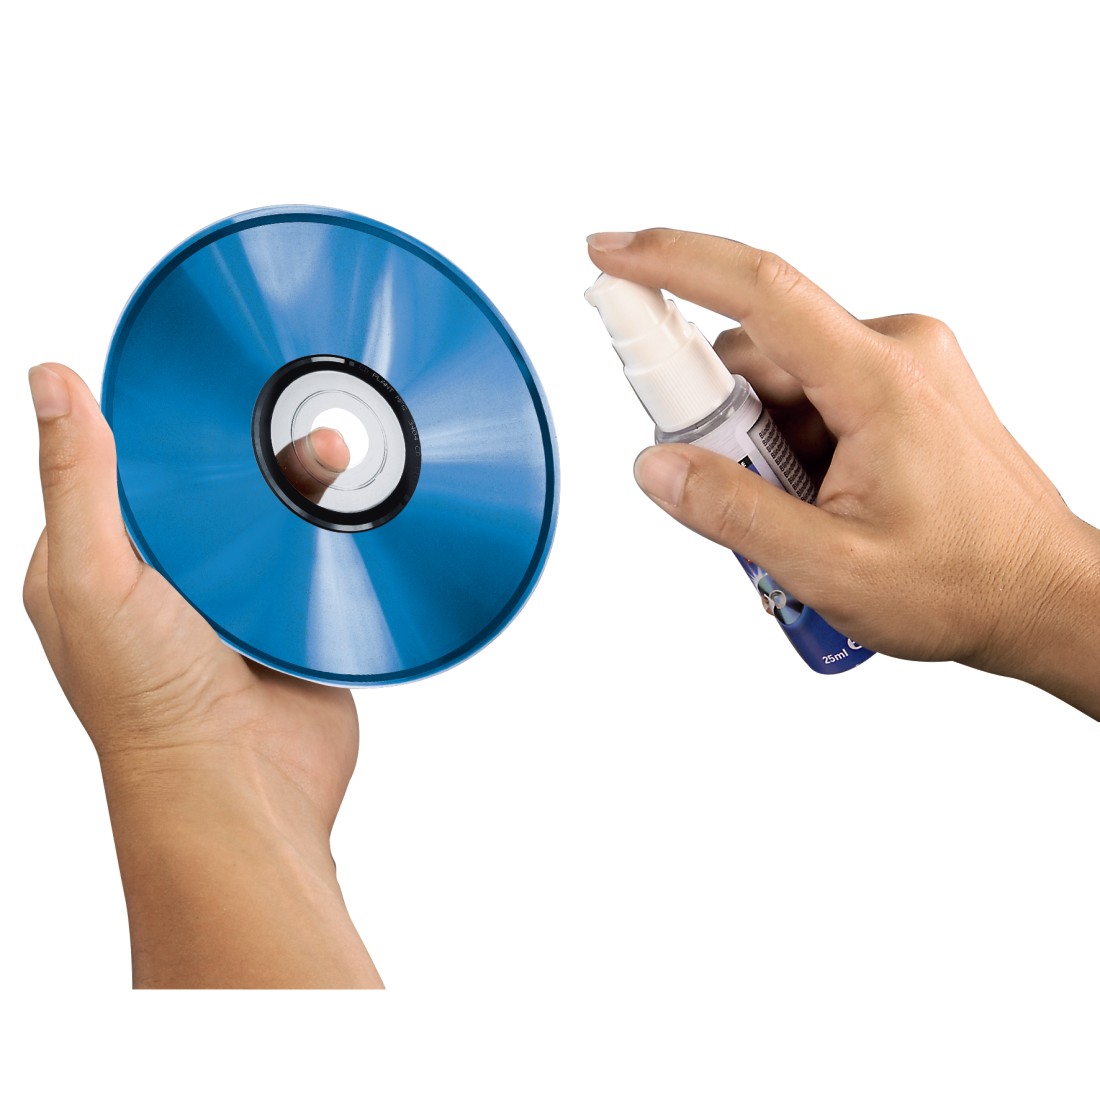 Восстановить cd. Набор для восстановления компакт дисков. Салфетка для очистки CD дисков. Специальная машинка для очистки CD дисков. Hama машинка для чистки CD.